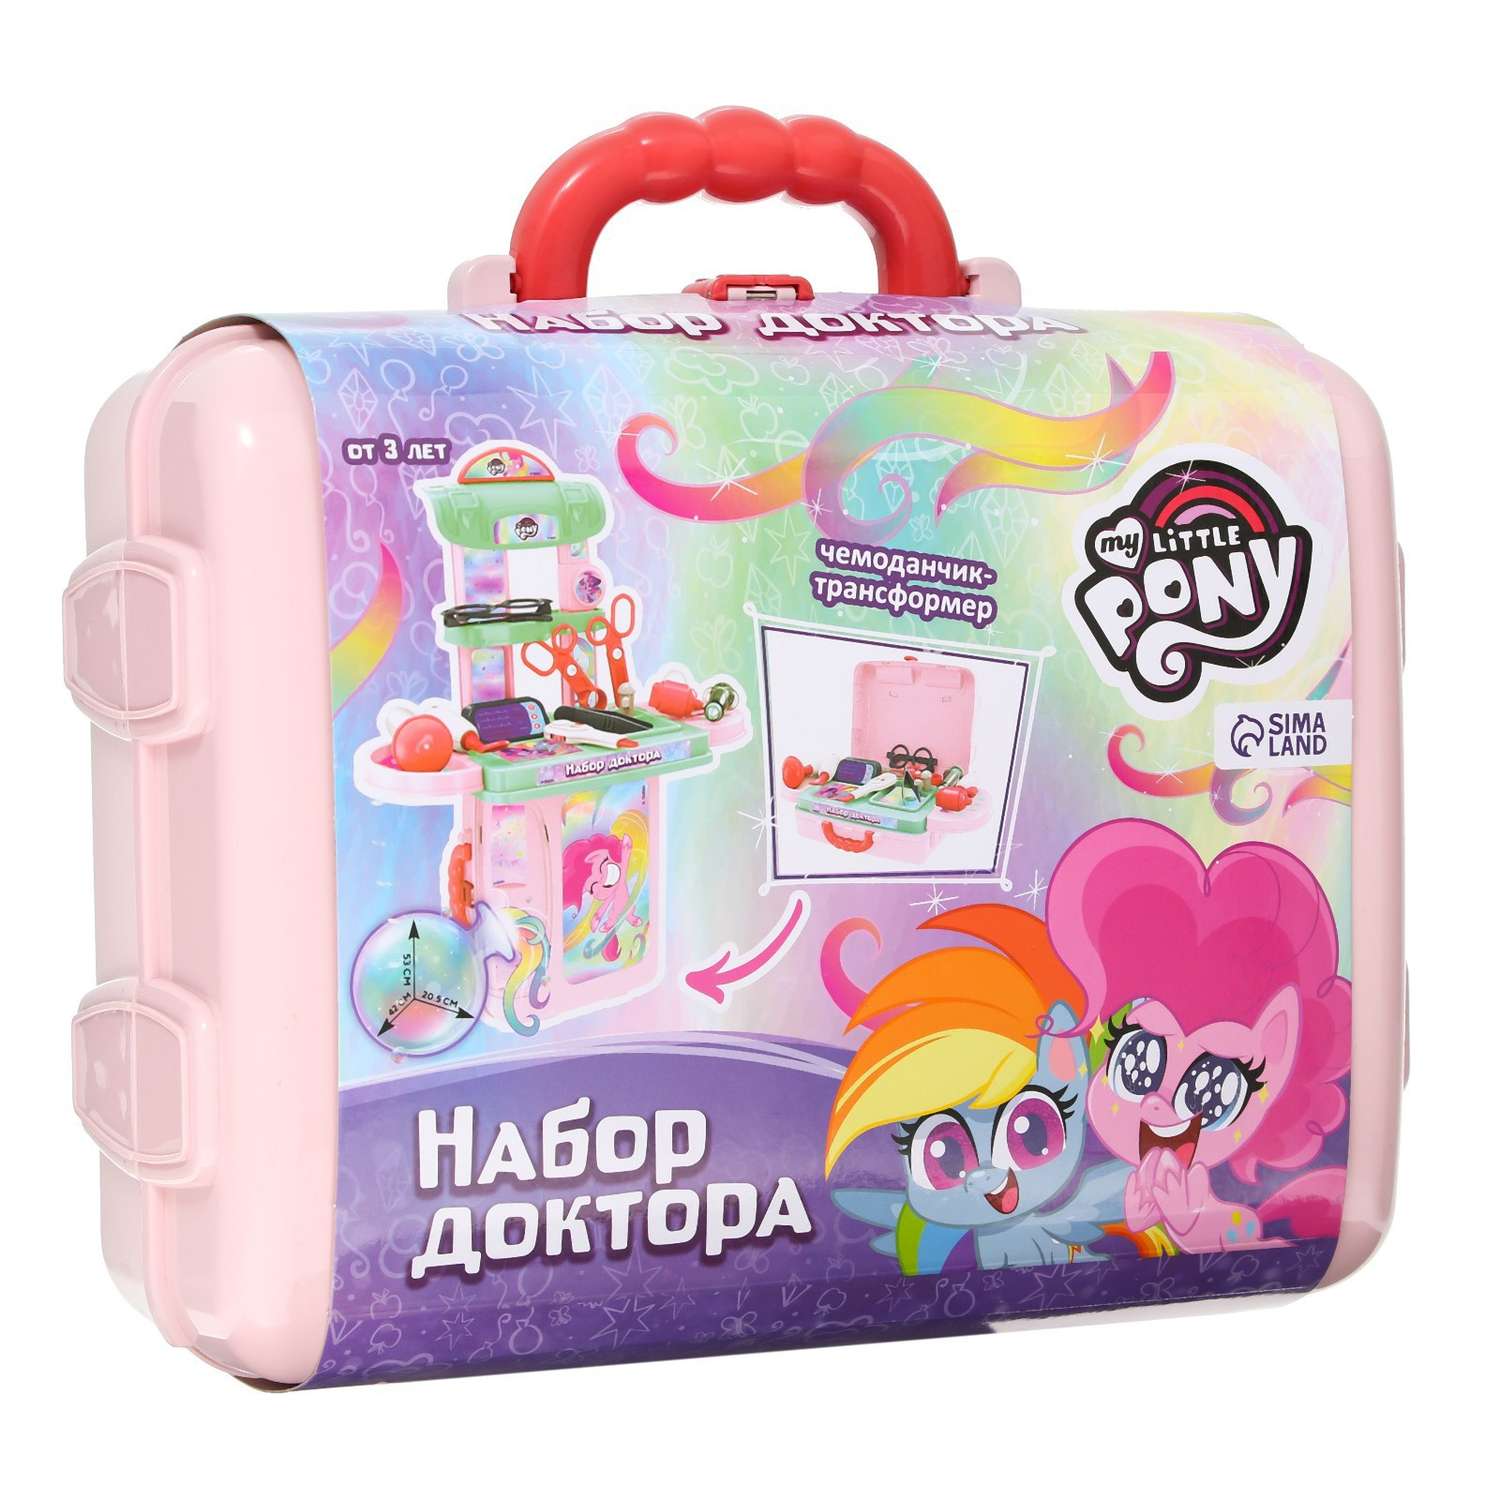 Игровой набор доктора Hasbro My Little Pony - фото 8